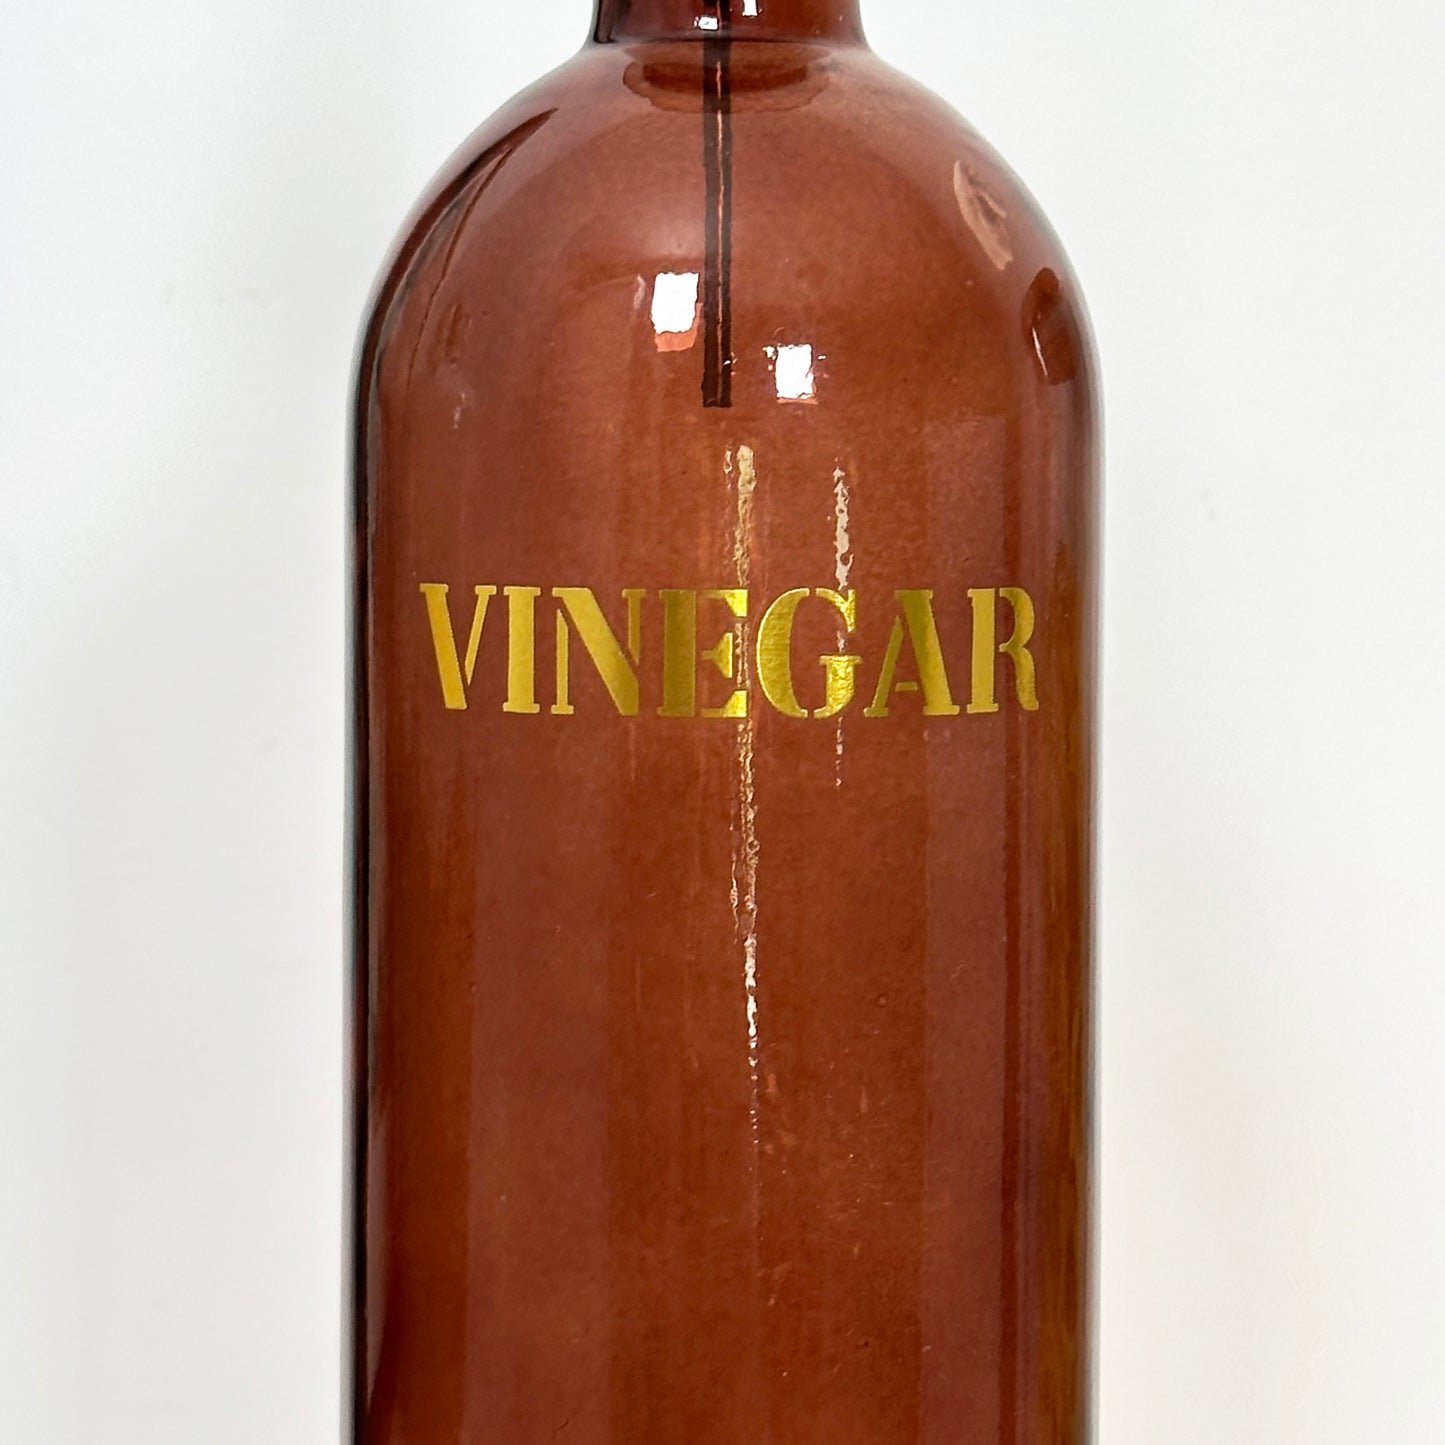 Amber Glass Vinegar Dispenser Bottle